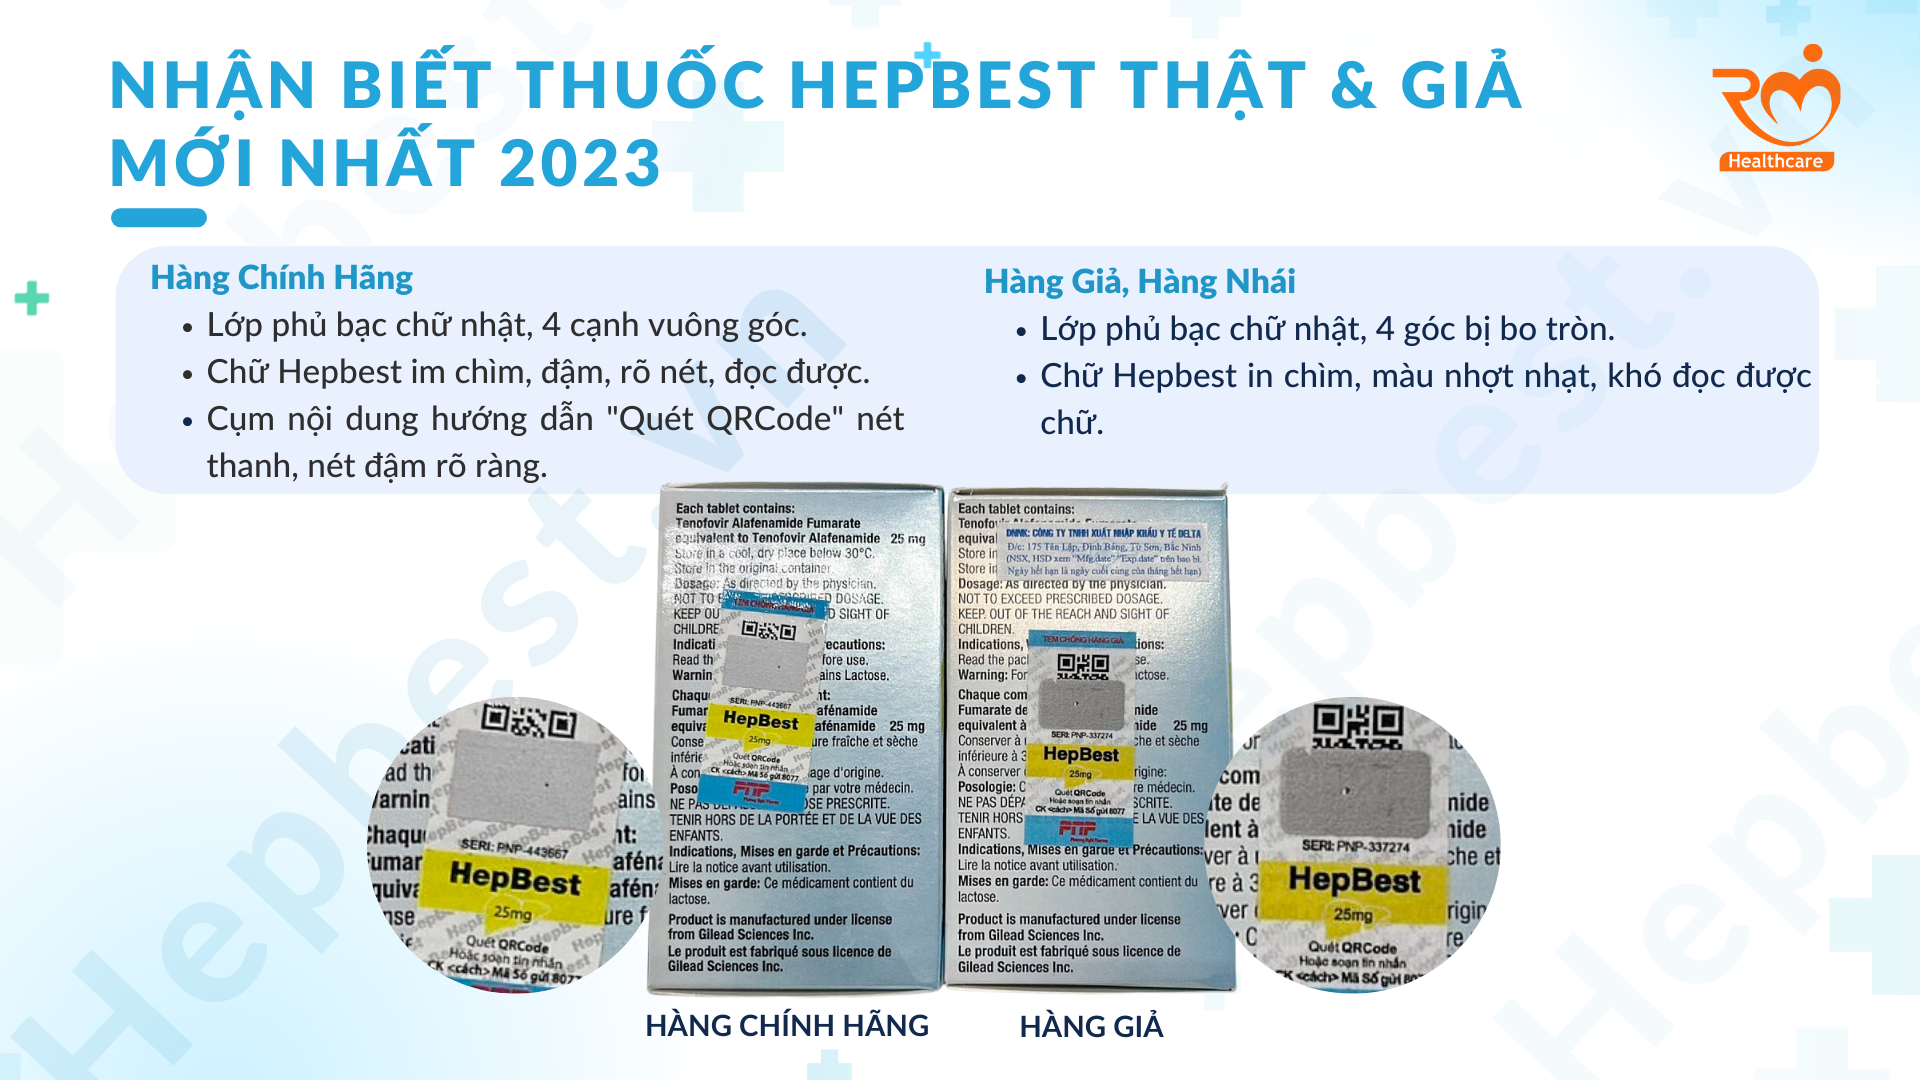 Phân biệt thuốc Hepbest chính hãng & thuốc giả mới nhất năm 2023.